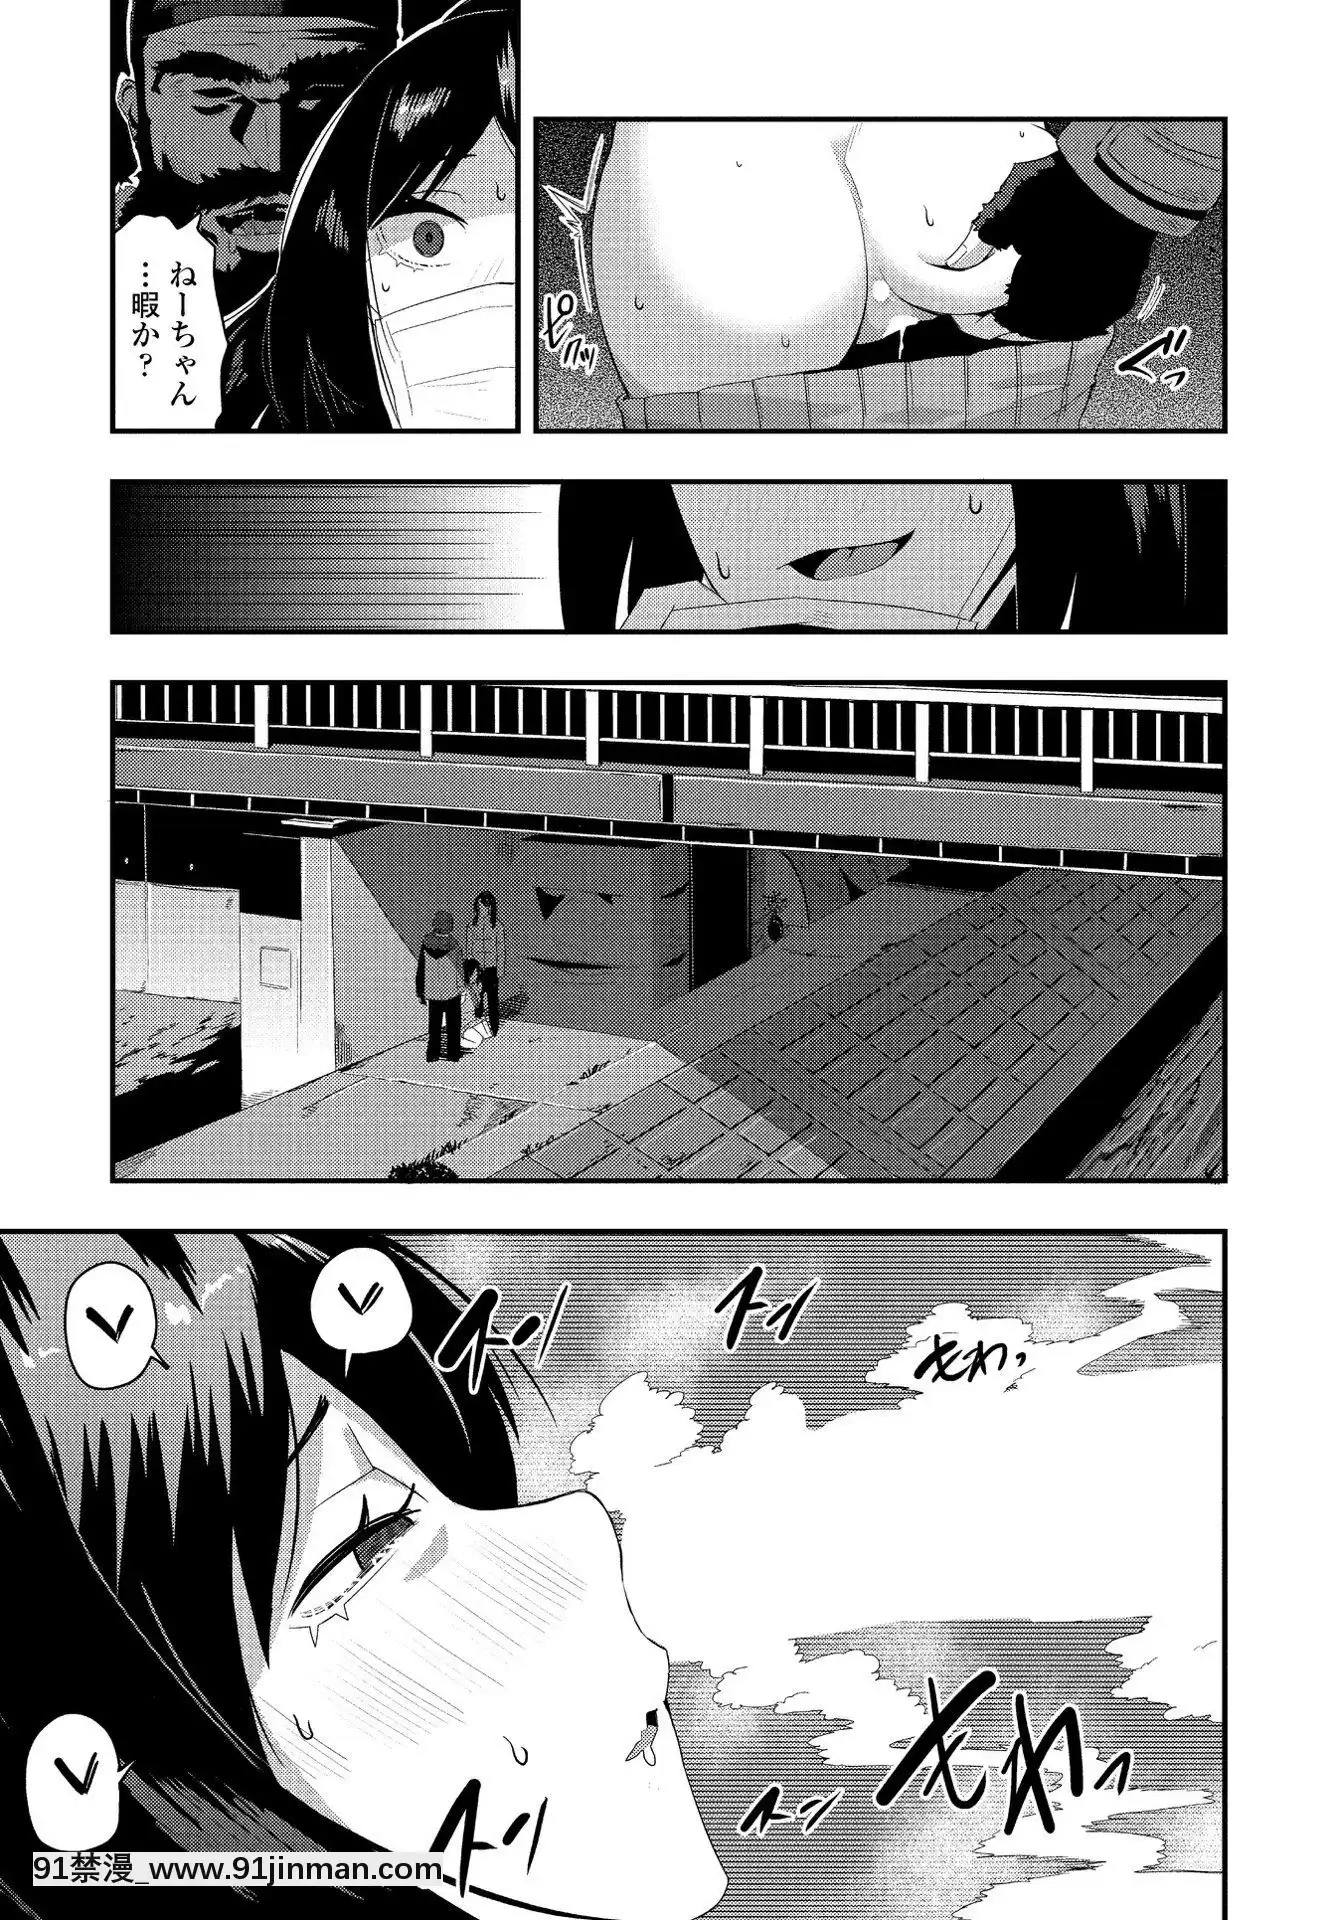 (Truyện tranh Seijin) [Khác] Câu lạc bộ chim cánh cụt COMIC tháng 5 năm 2020 [Kỹ thuật số]【hentai co chau】